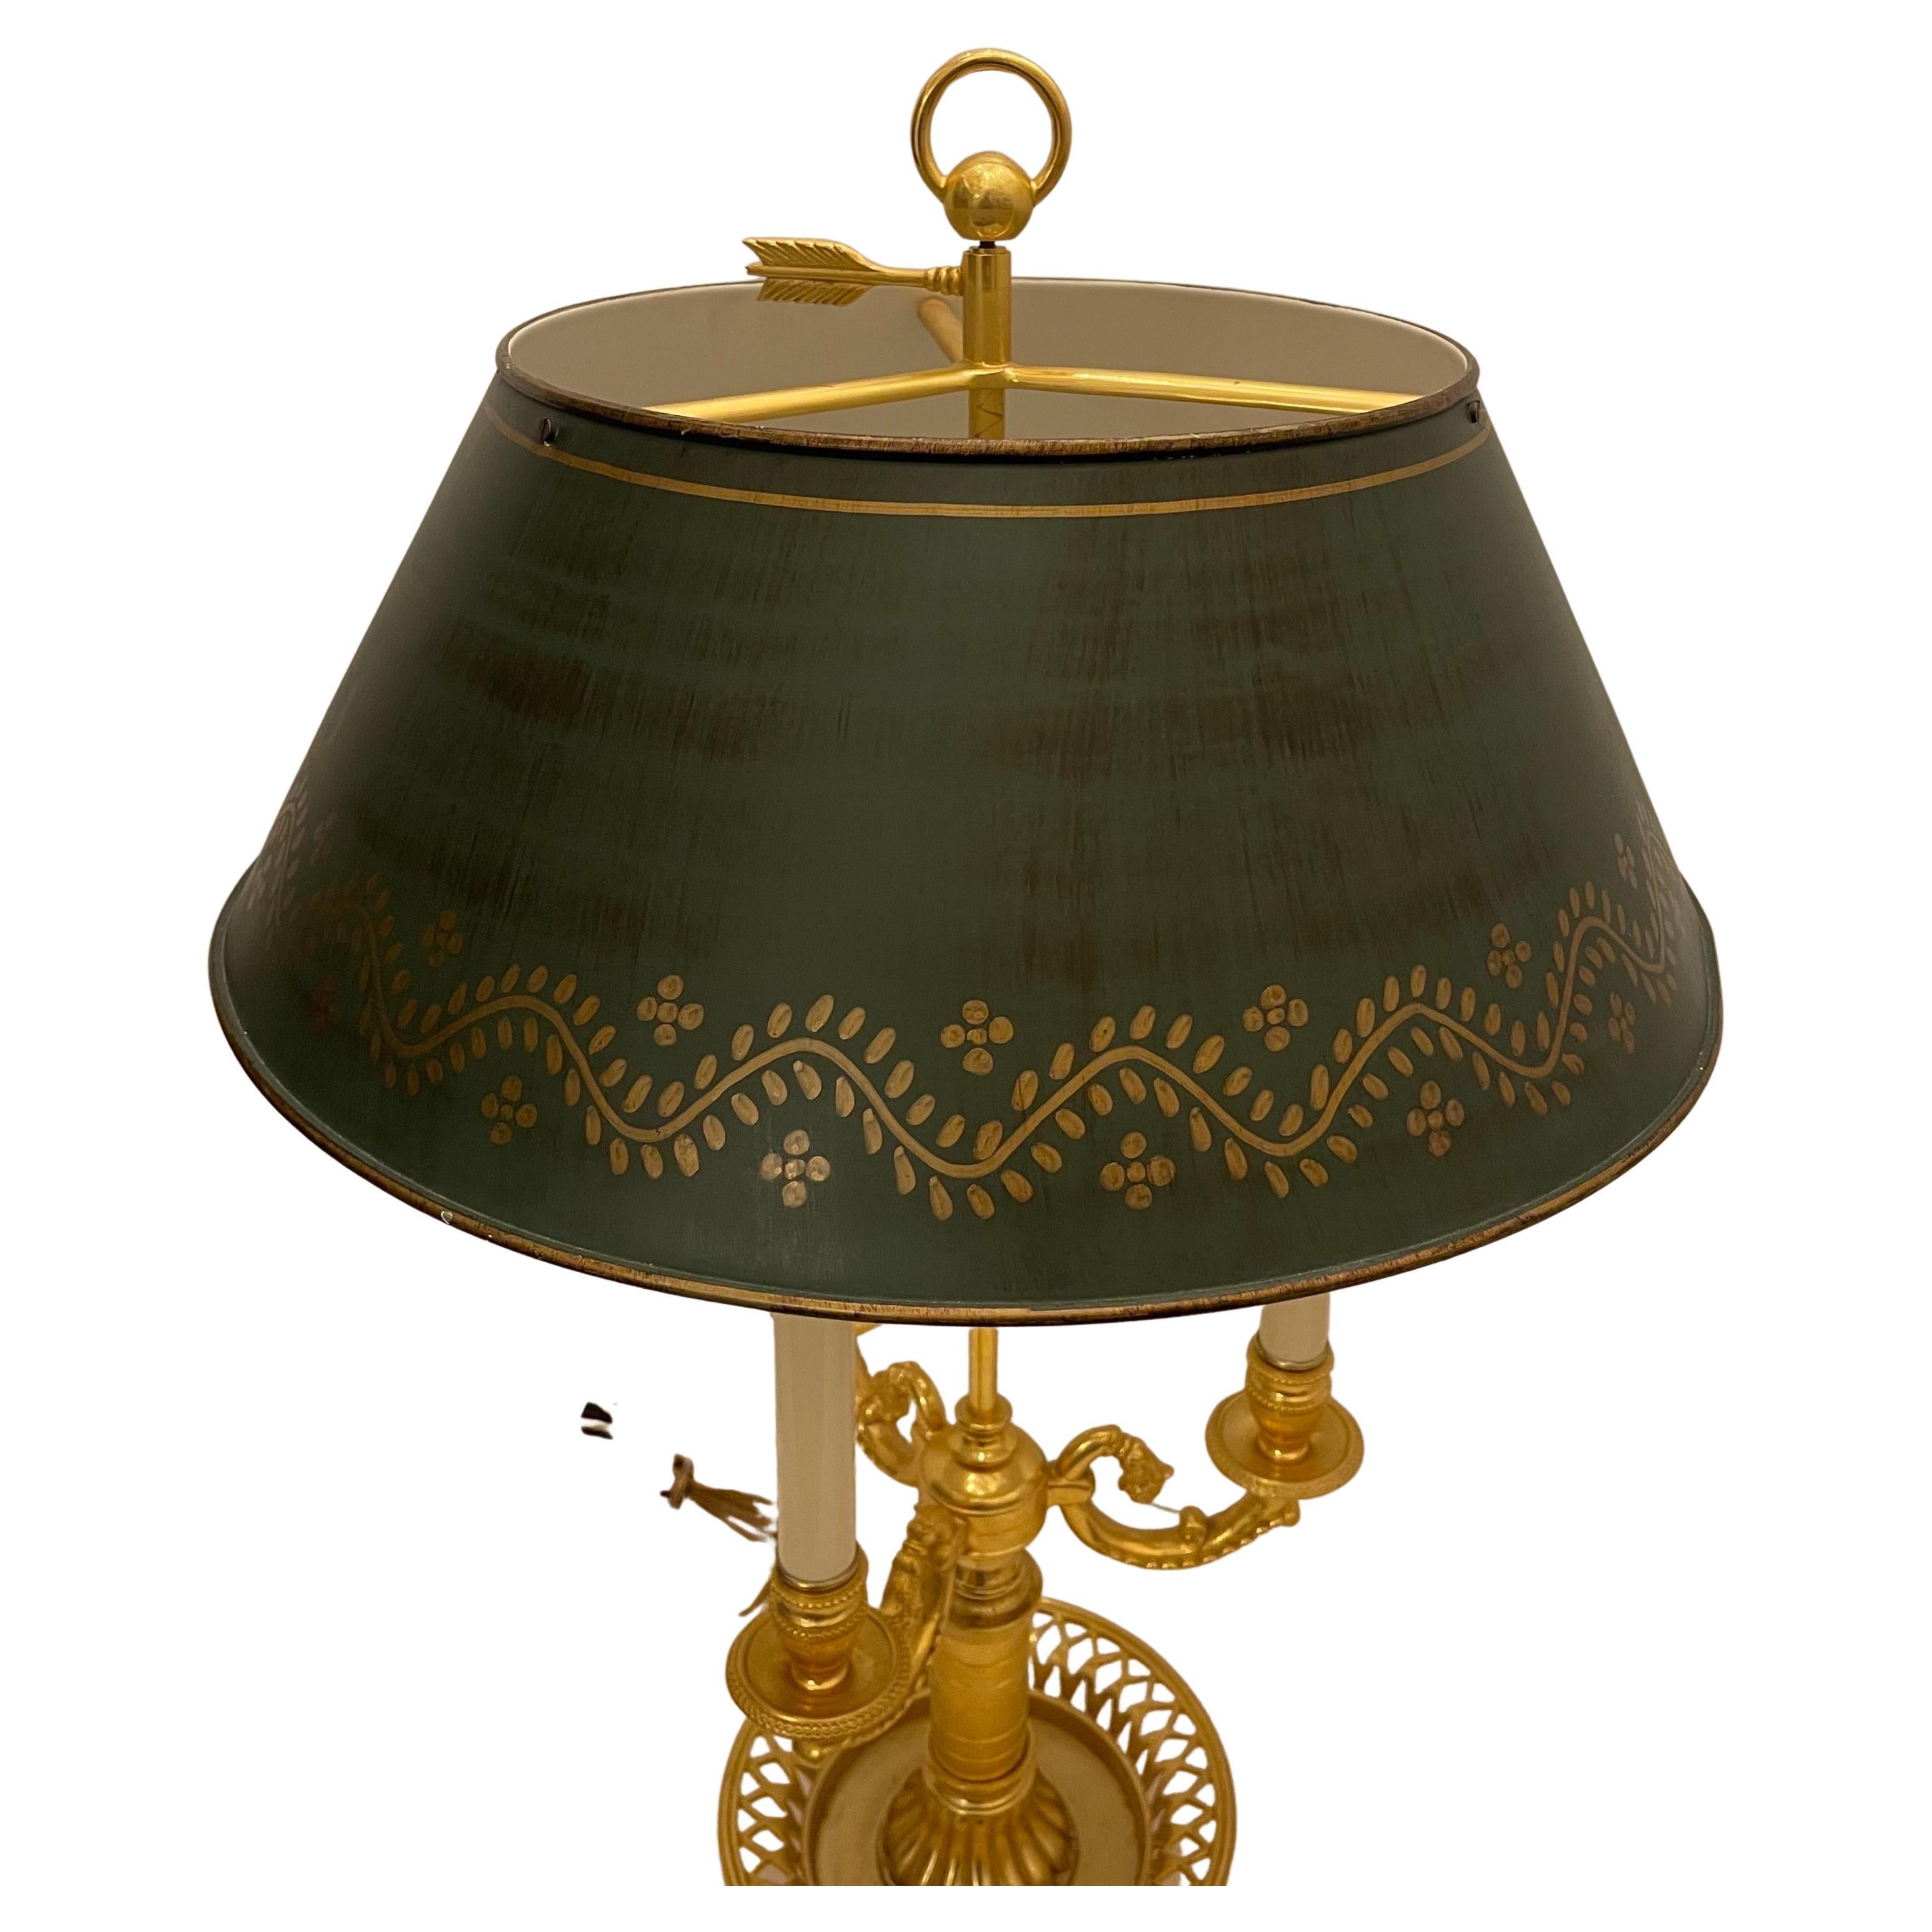 Wunderschöne französische Empire / Neoklassizismus Bronze Korbform mit drei Kandelaber Bouillotte Lampe mit grünen Tole Schatten.

 